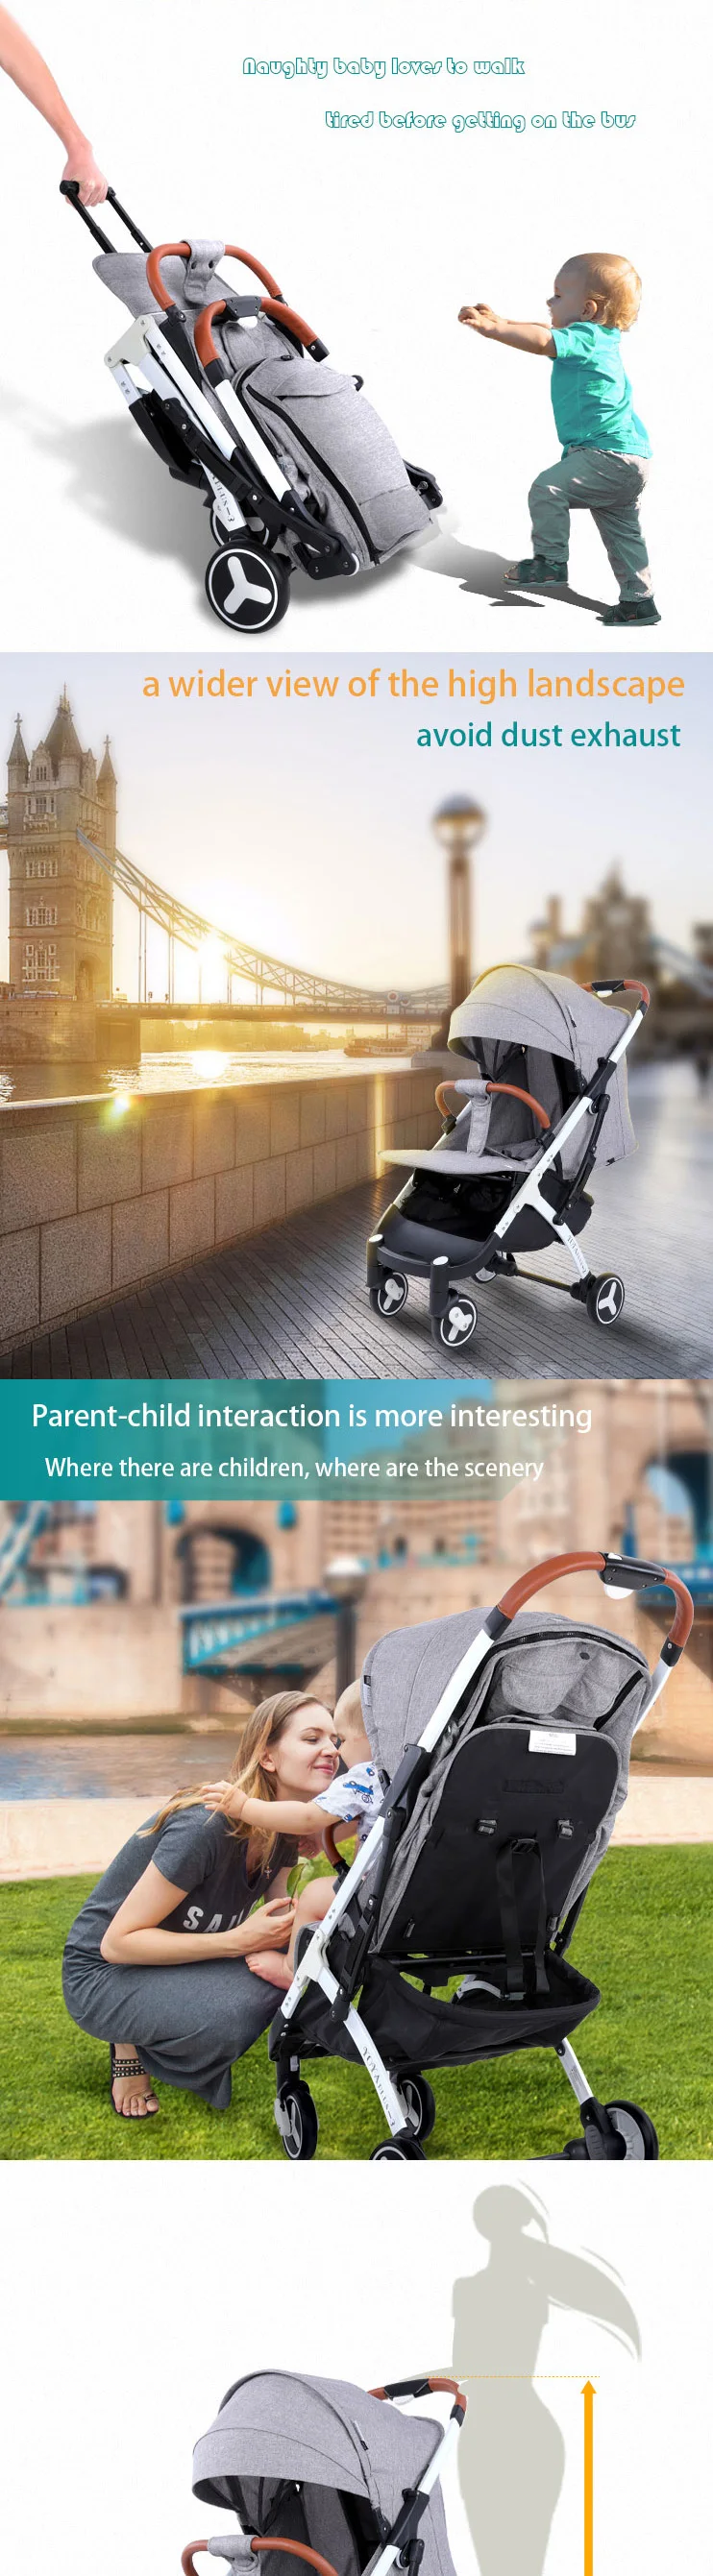 Yoya Plus3Easy складной светильник для детской коляски, складной зонт для автомобиля, может лежать ультра-светильник, рама из алюминиевого сплава, детская коляска